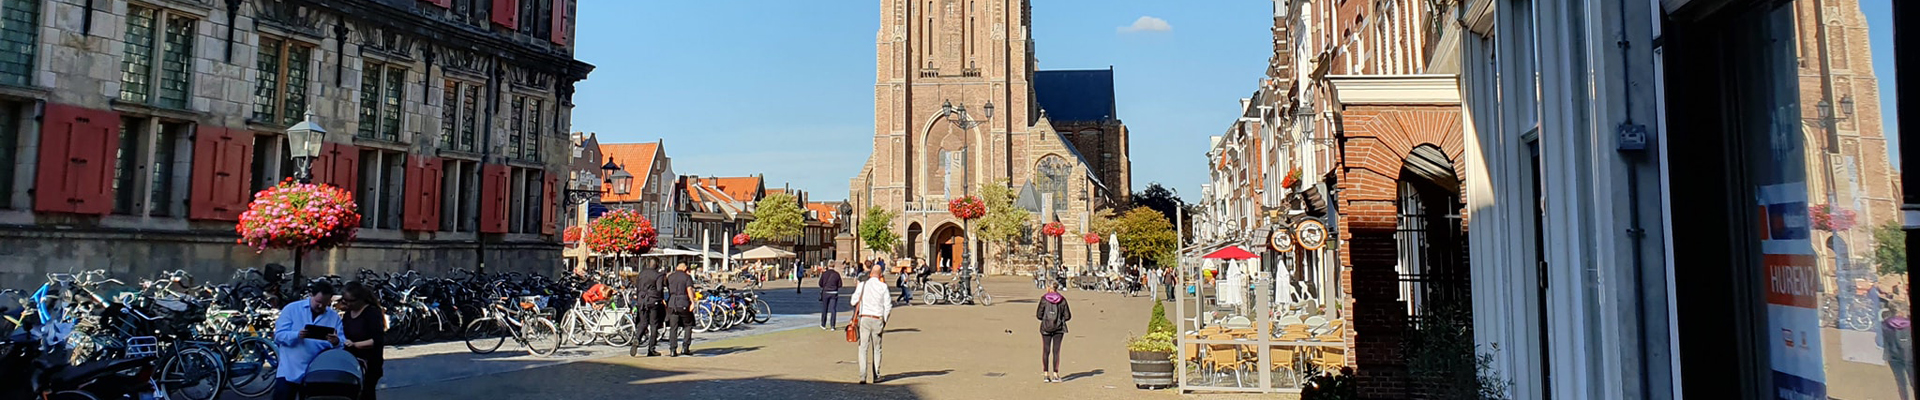 Ictkring Delft Markt